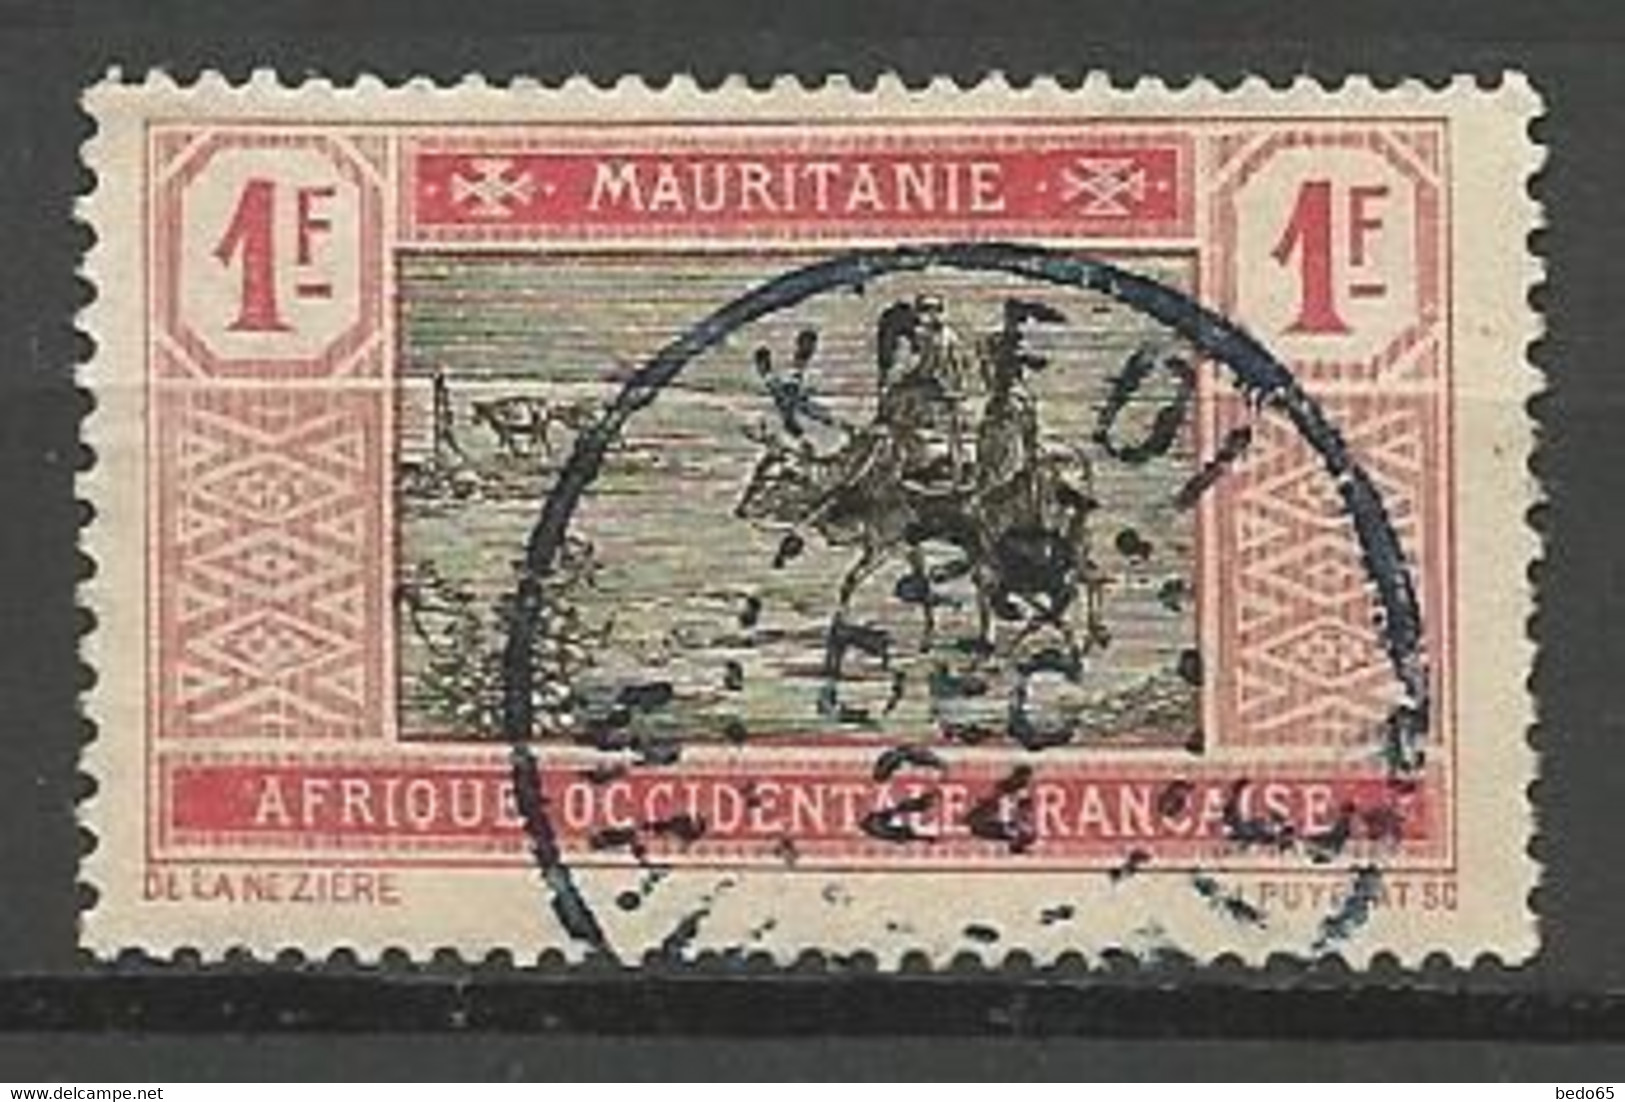 MAURITANIE N° 31 CACHET KAEDI - Used Stamps